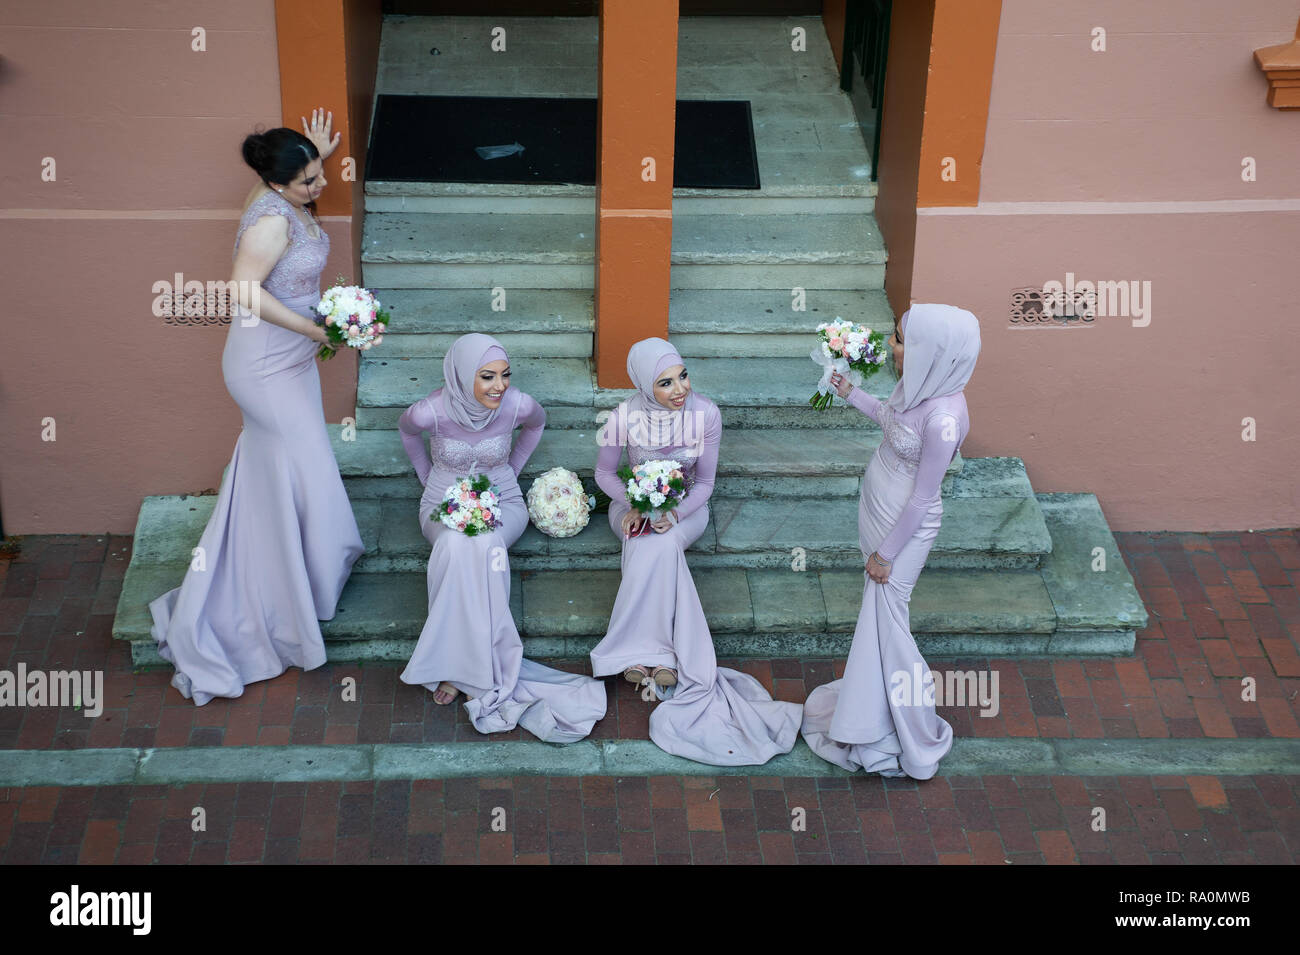 16.09.2018, Sydney, Nuovo Galles del Sud, Australien - Eine Gruppe muslimischer Brautjungfern sitzt auf den Stufen eines Gebaeudes im Stadtviertel la roccia Foto Stock